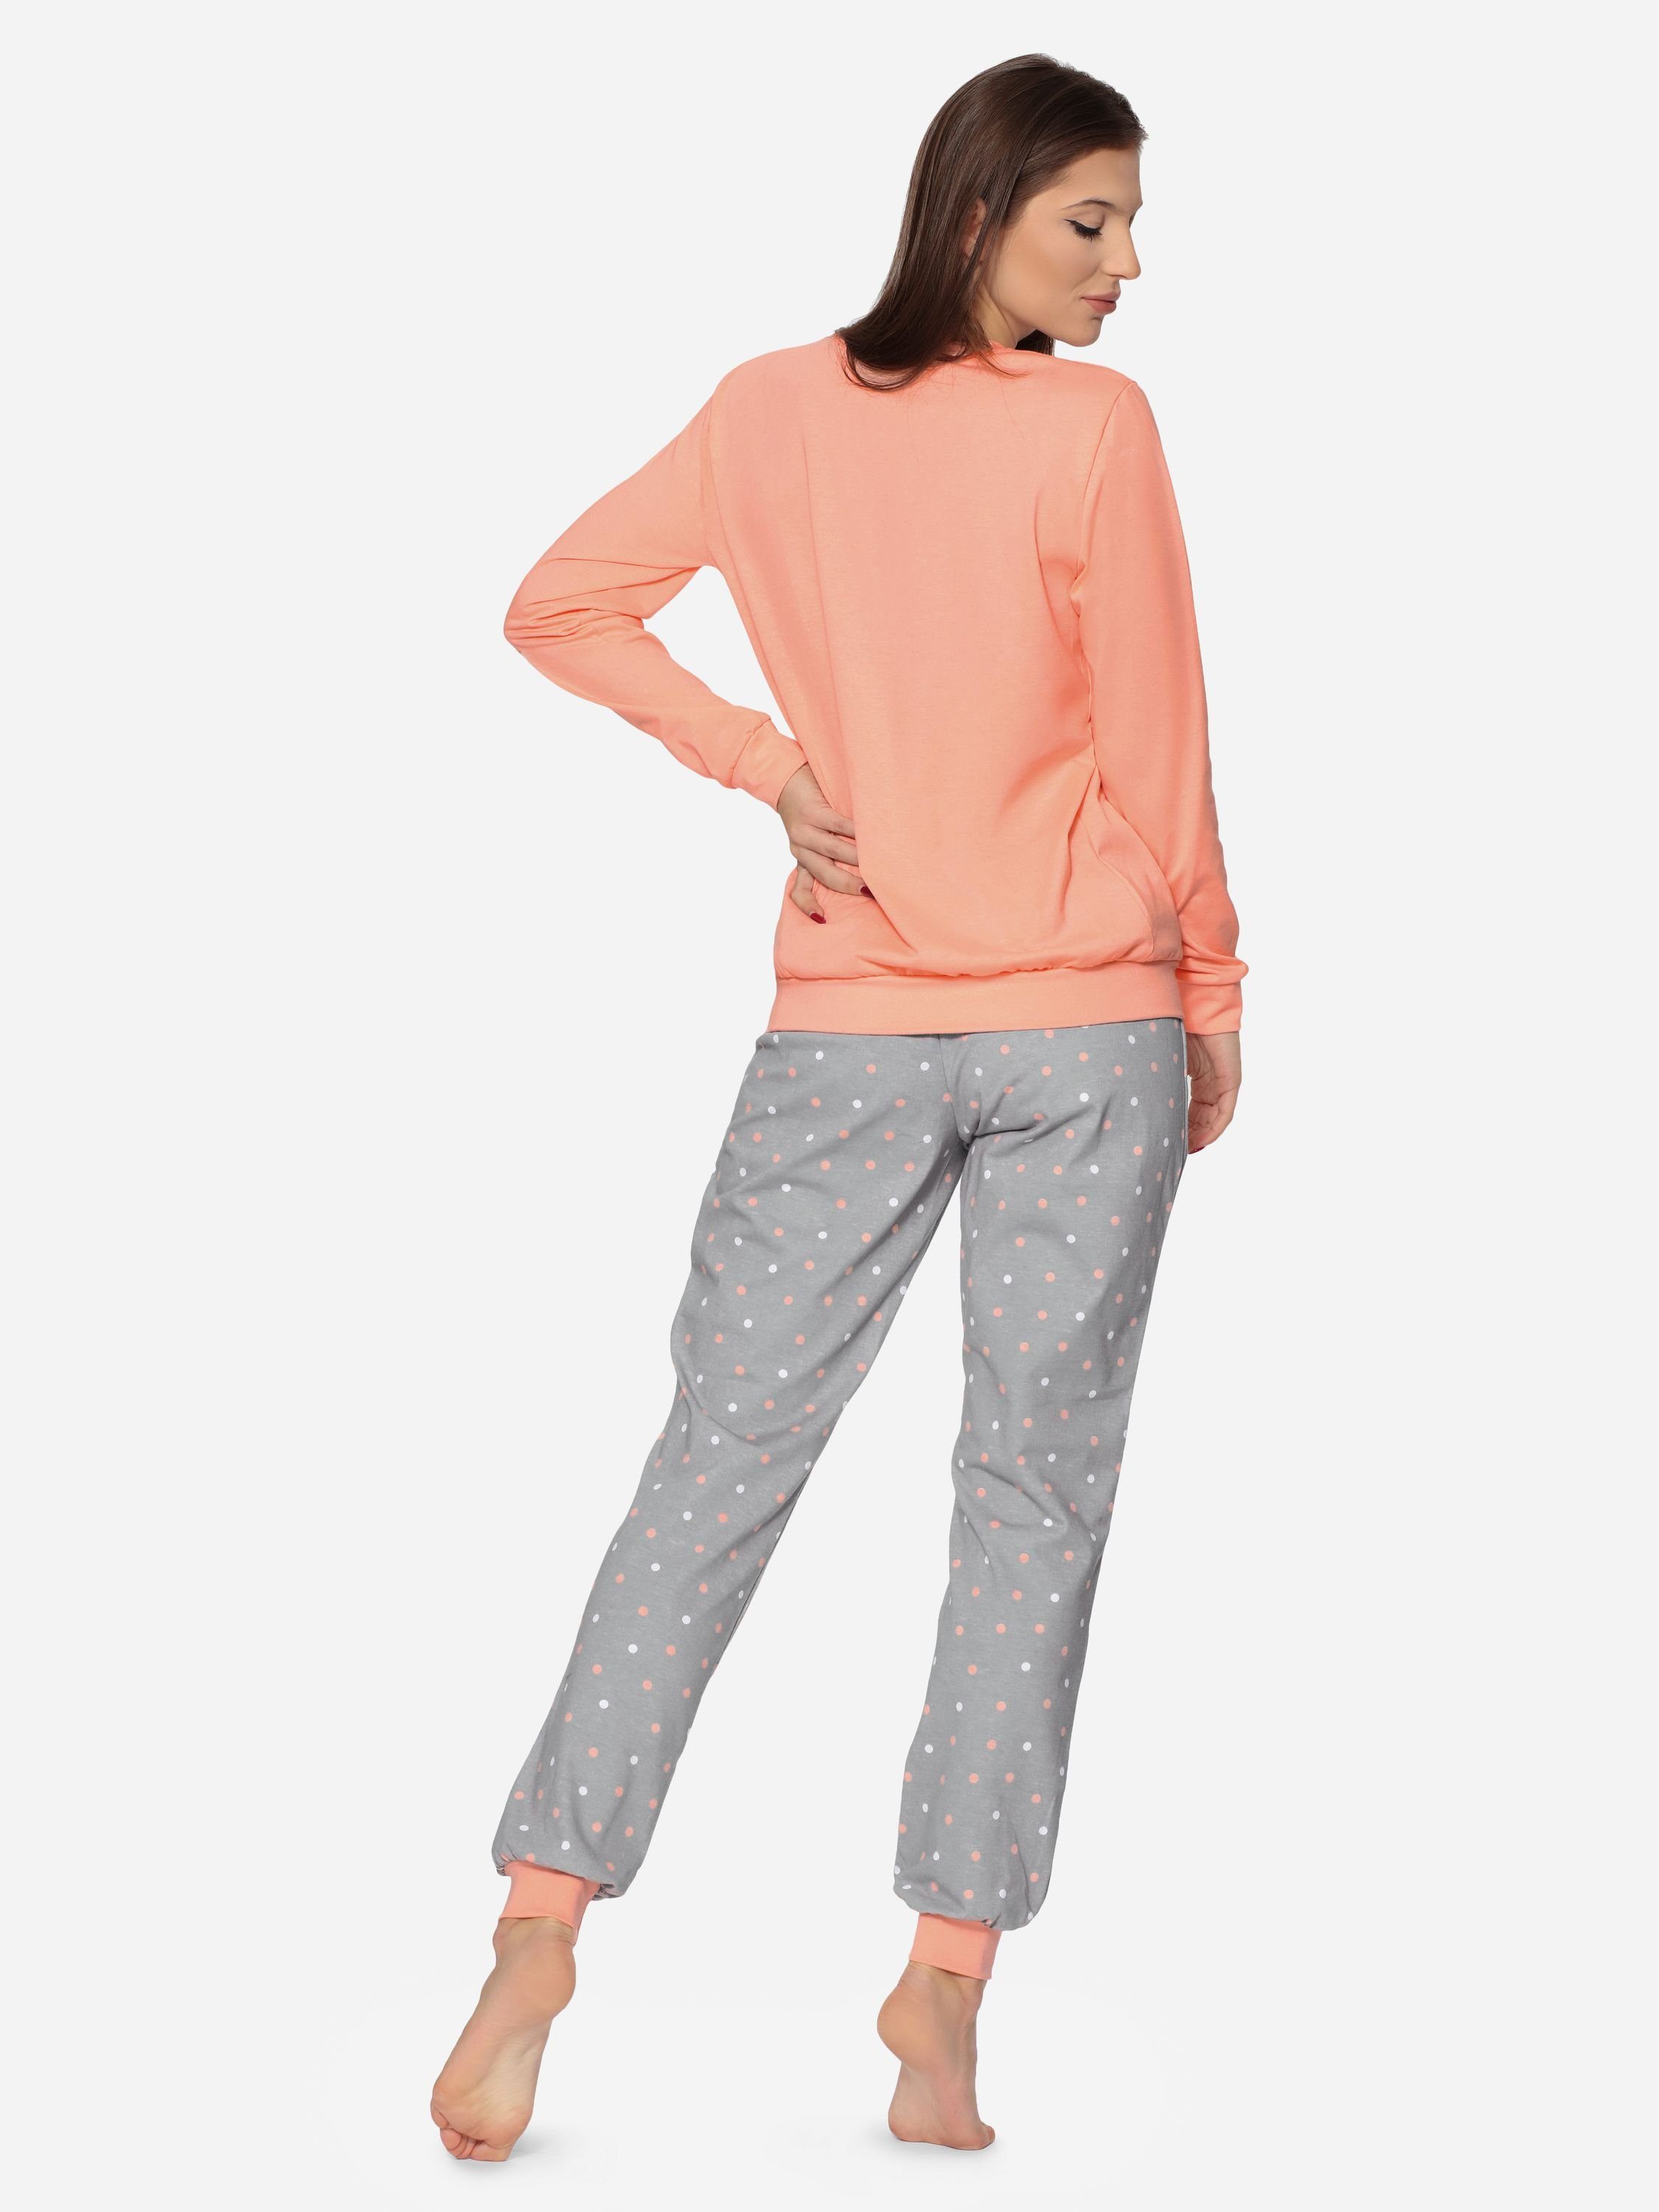 Zweiteiler Merry Damen Schlafanzug bunt Pyjama Muster MS10-268 Lachs/Grau lang Style mit Schlafanzug